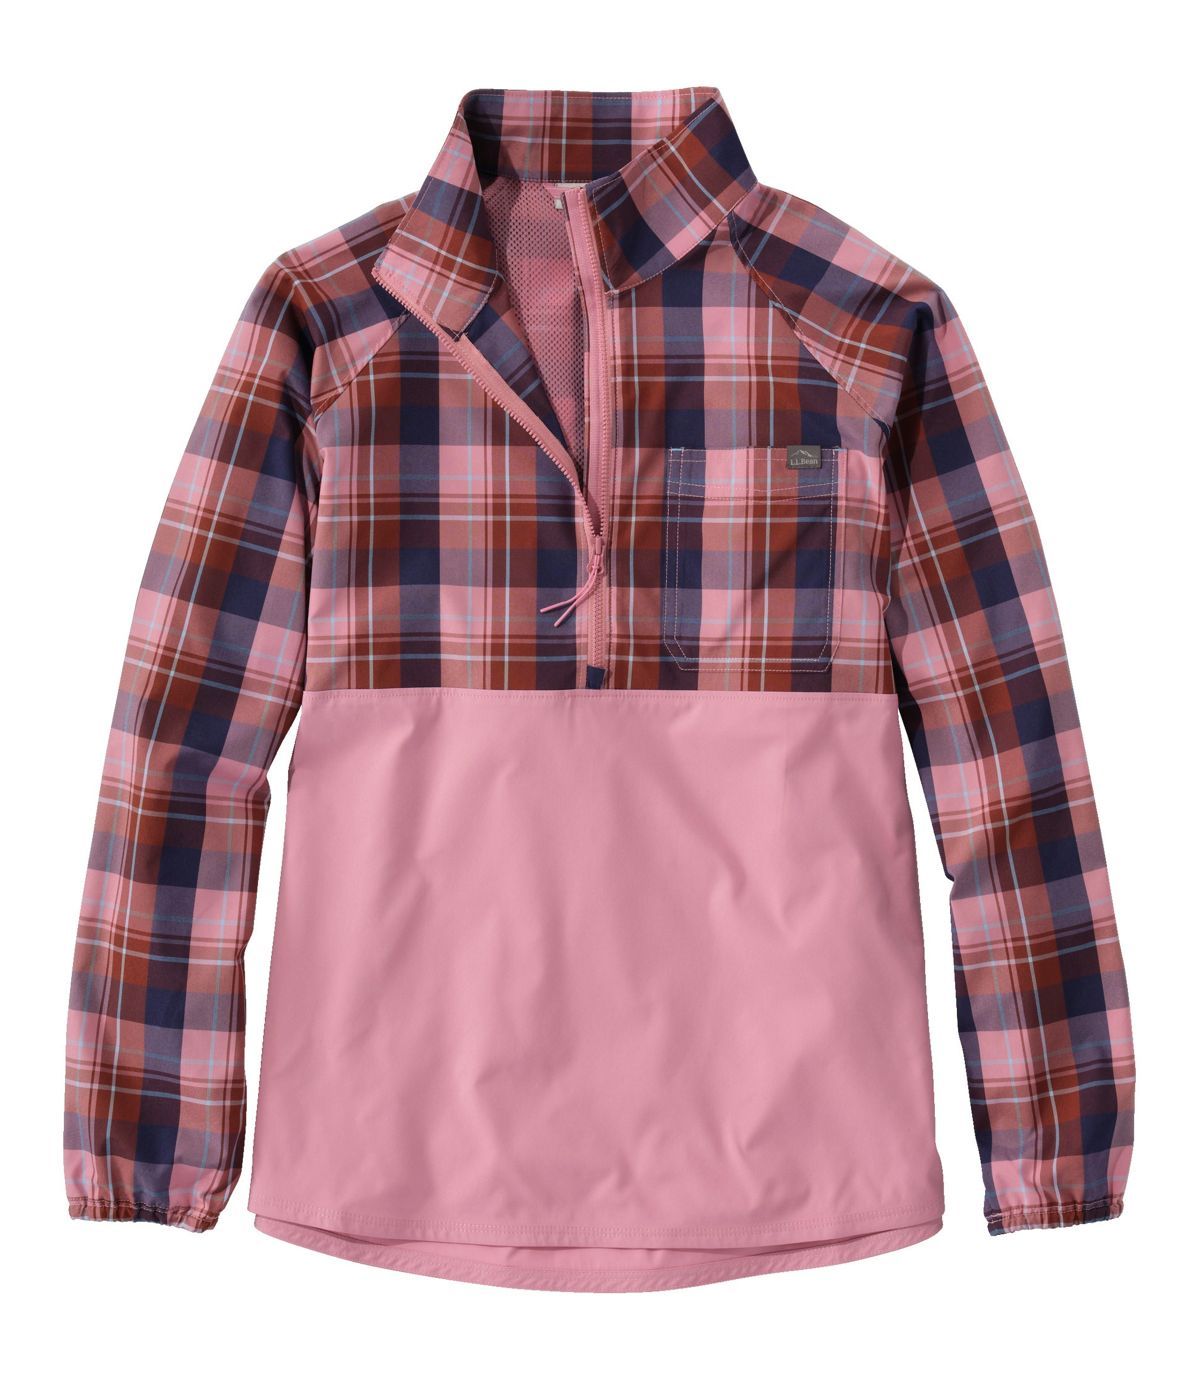 Women's Everyday SunSmart® Woven Shirt, Quarter-Zip Pullover Colorblock | L.L. Bean